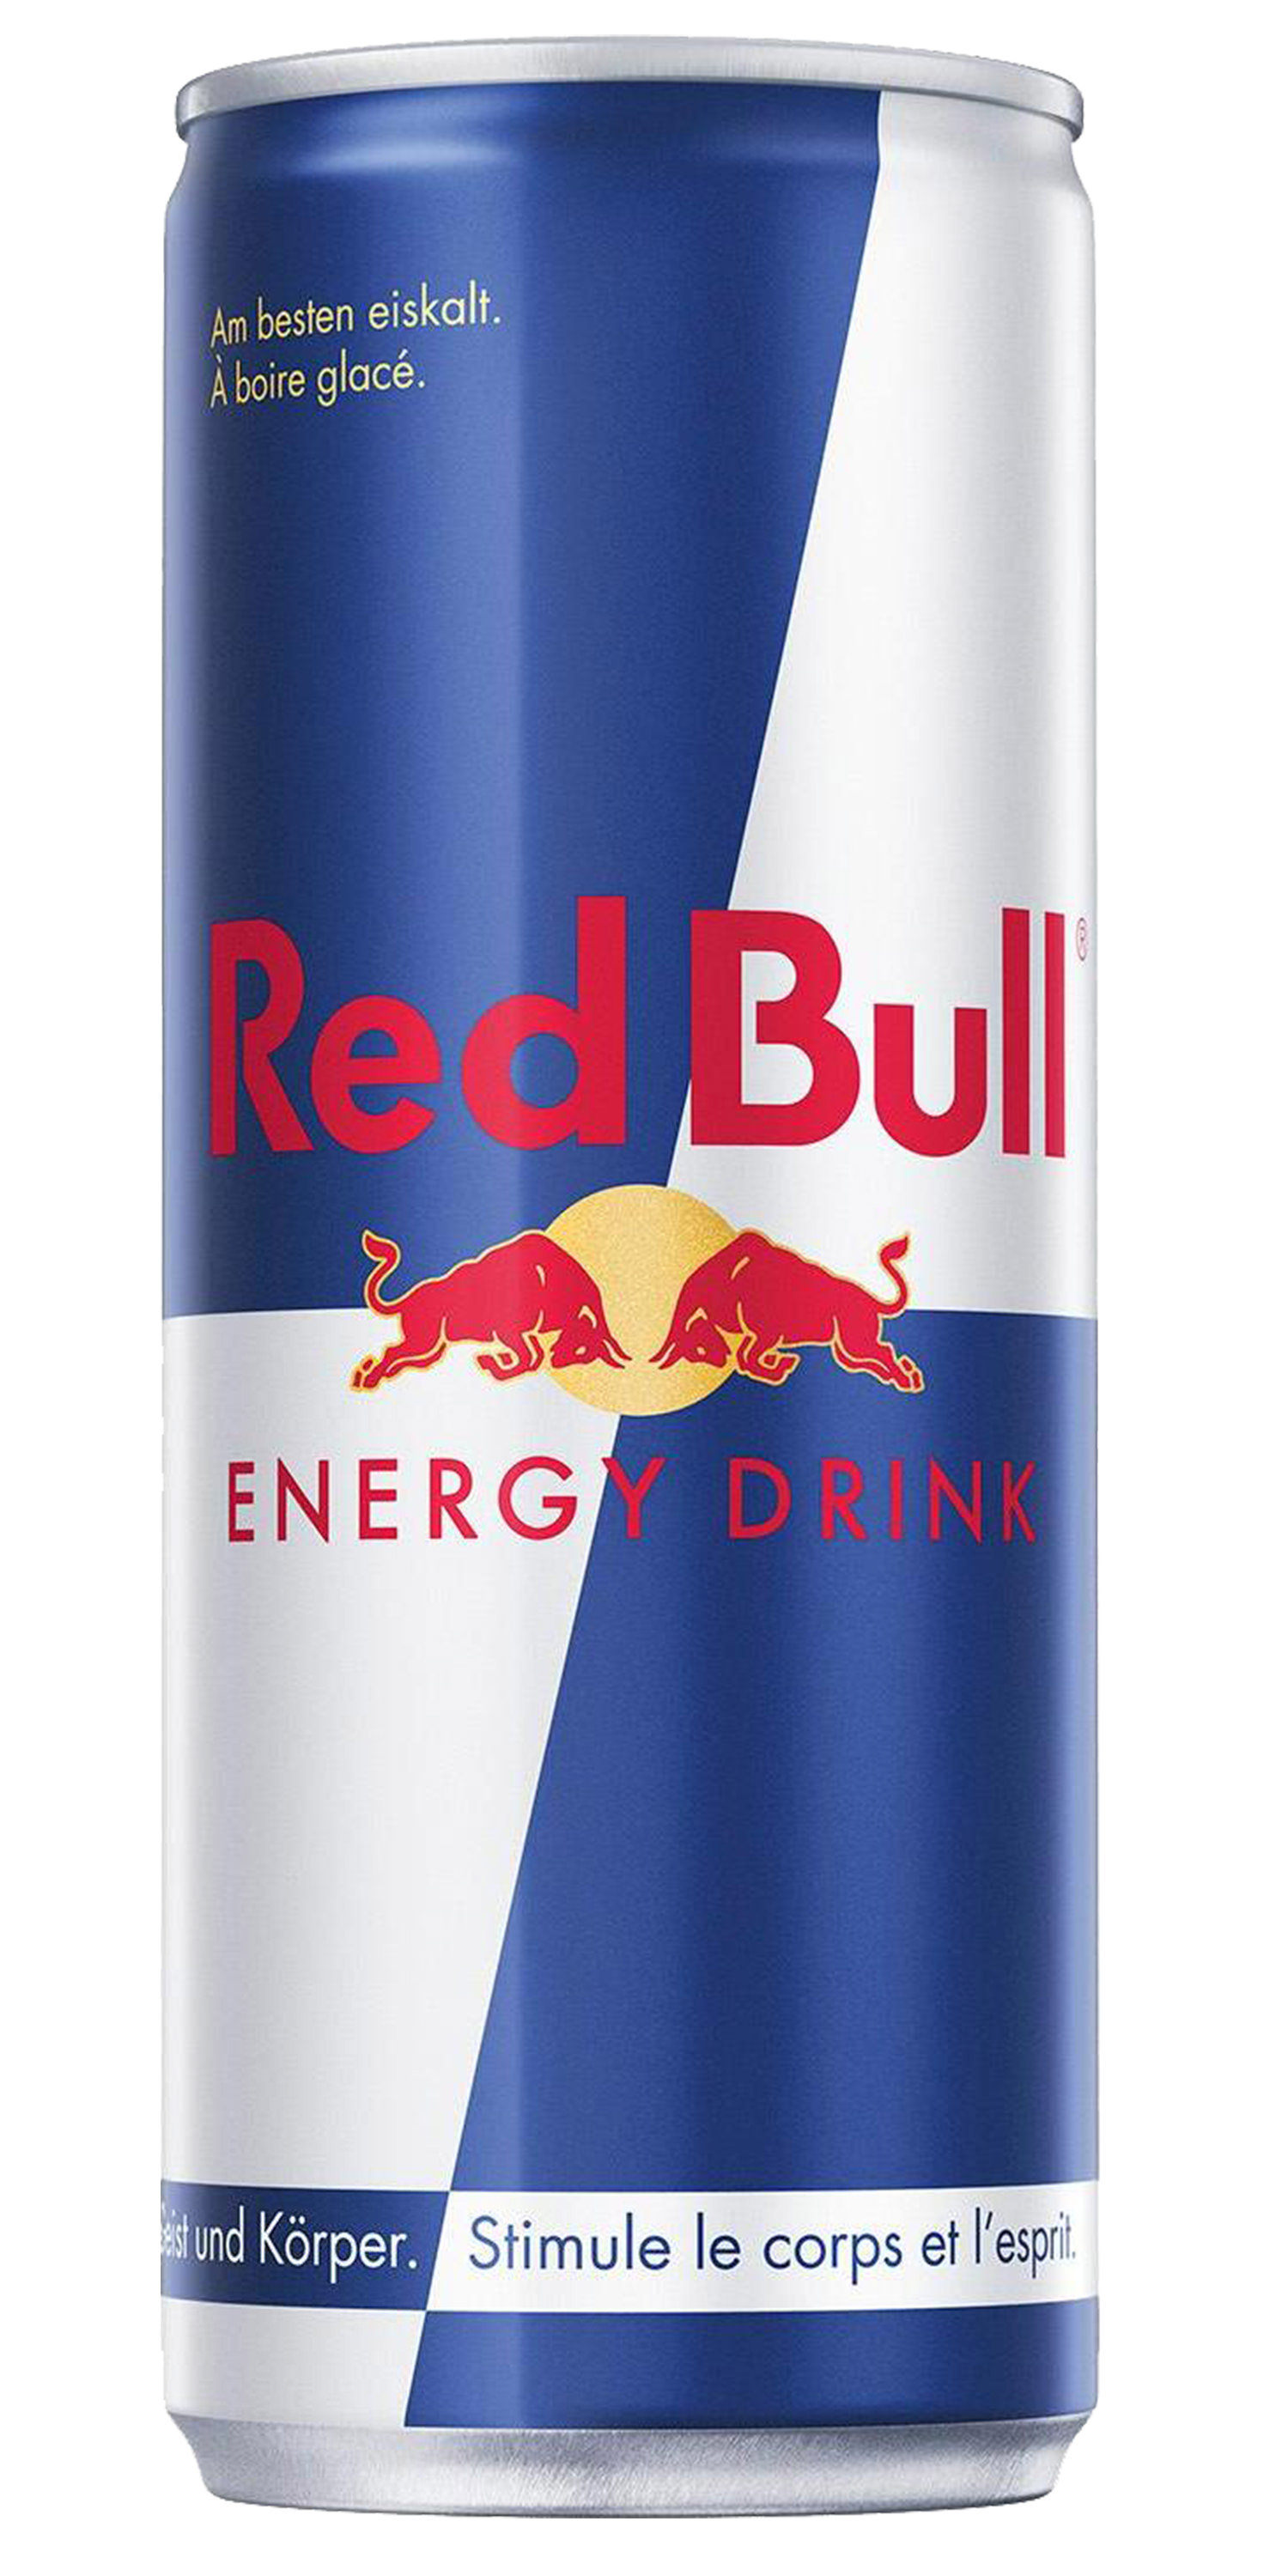 Organics Red Bull Simply Cola*  Amstein SA - The beer ambassador